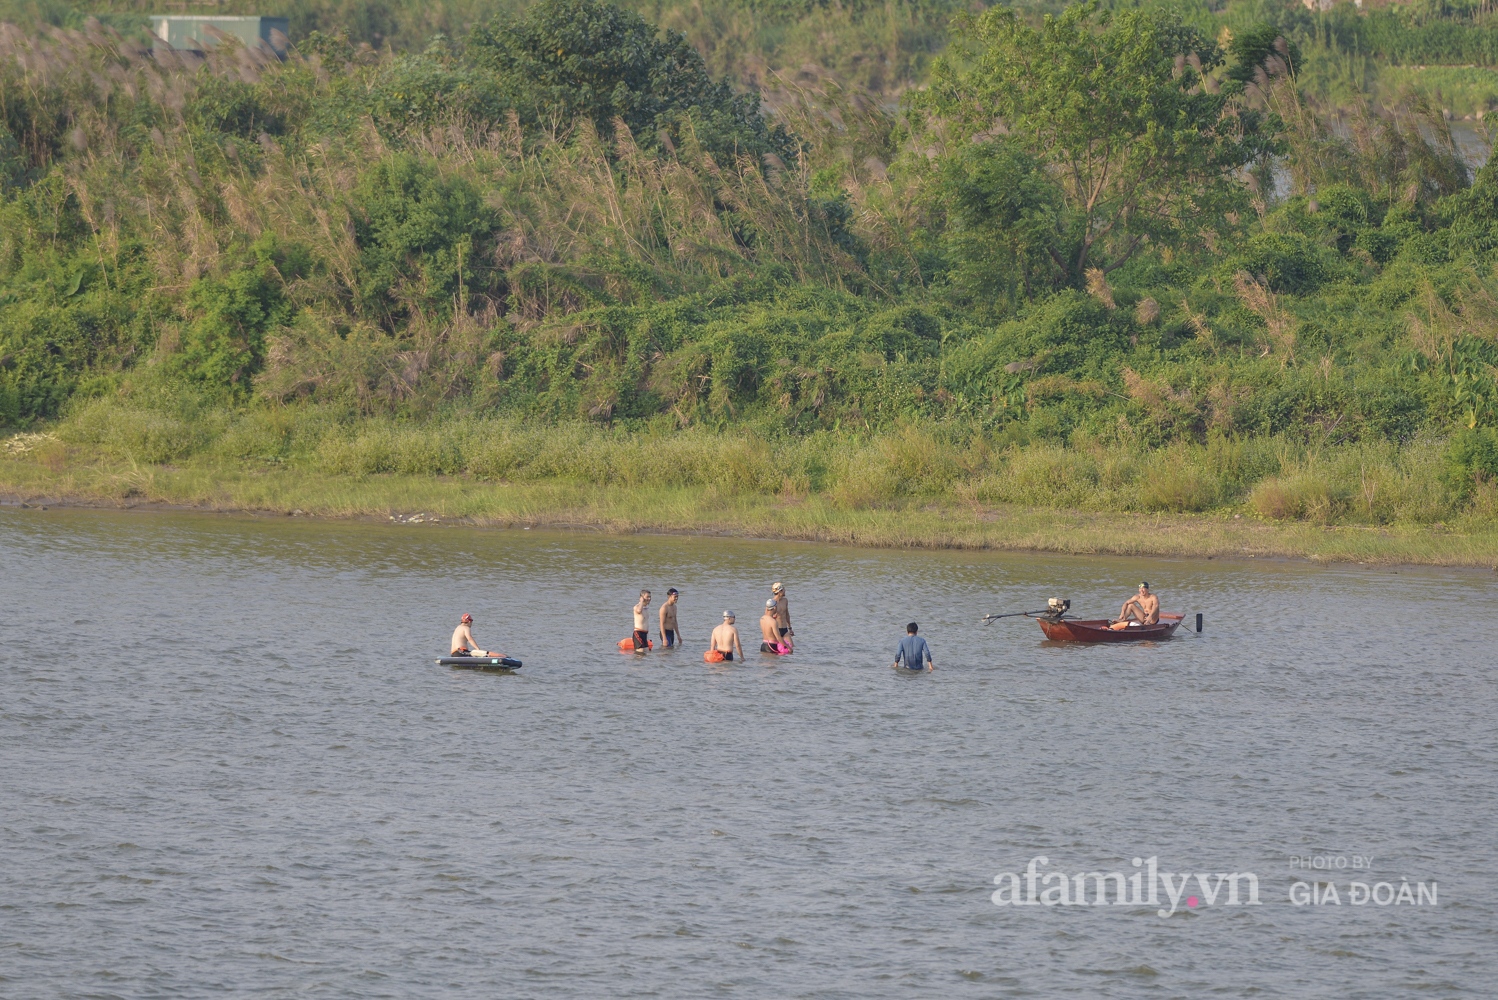 Bất chấp lệnh cấm tụ tập đông người, người Hà Nội vẫn đổ xô ra sông Hồng giải nhiệt - Ảnh 7.